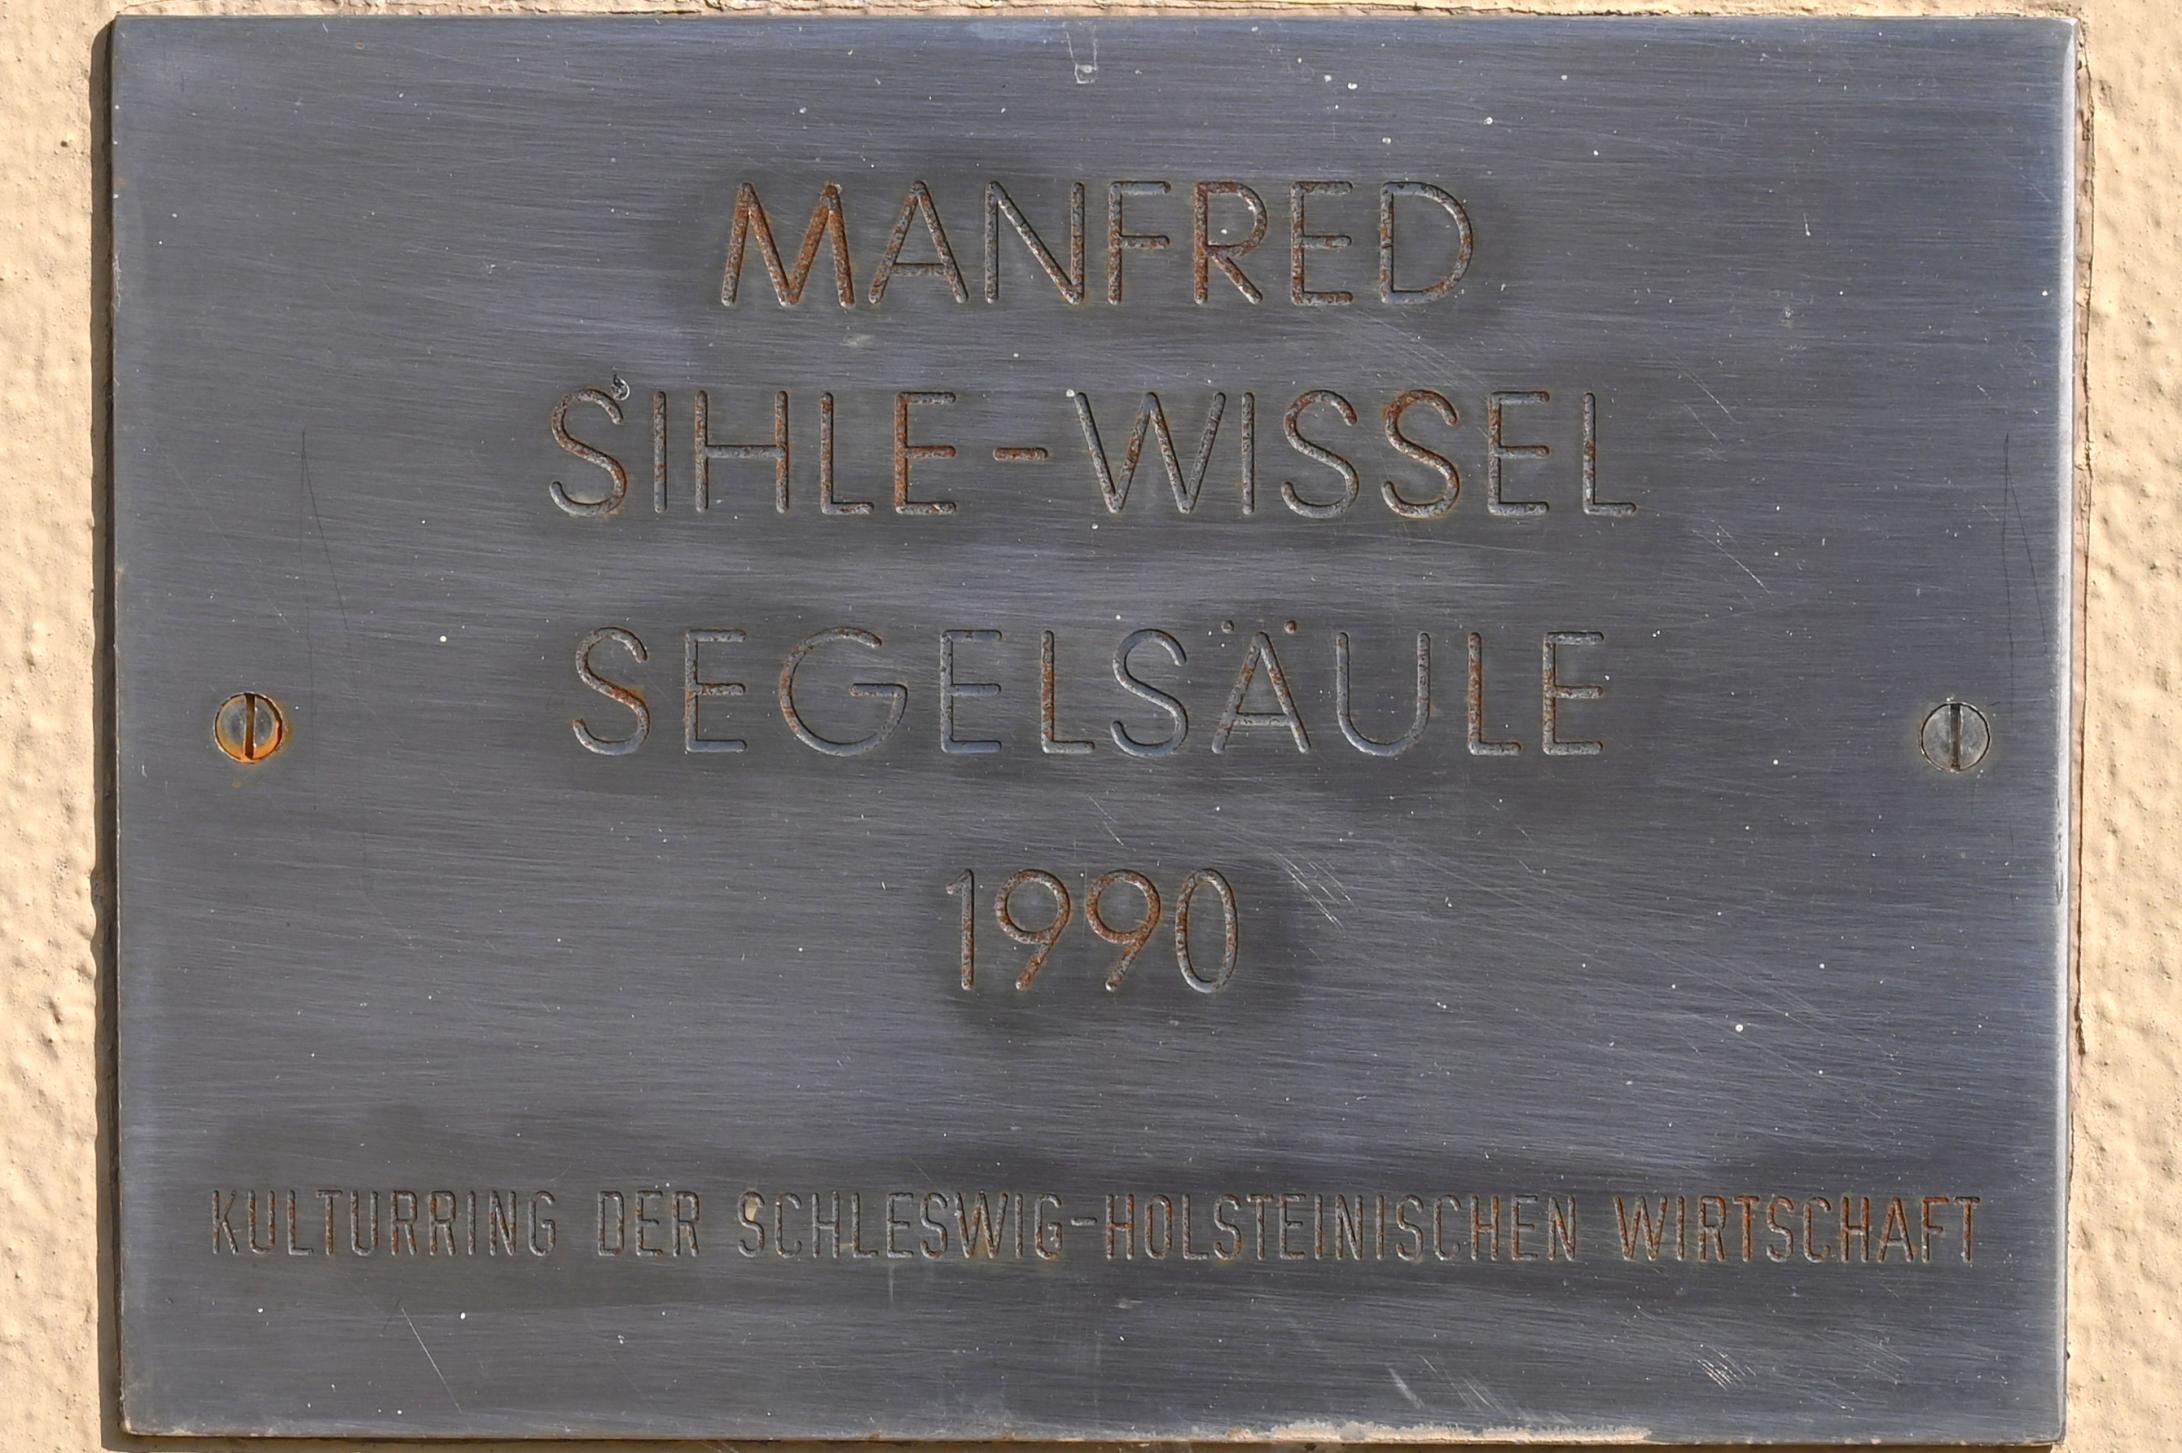 Manfred Sihle-Wissel (1975–2011), Segelsäule, Schleswig, Landesmuseum für Kunst und Kulturgeschichte, Außenbereich, 1990, Bild 3/3